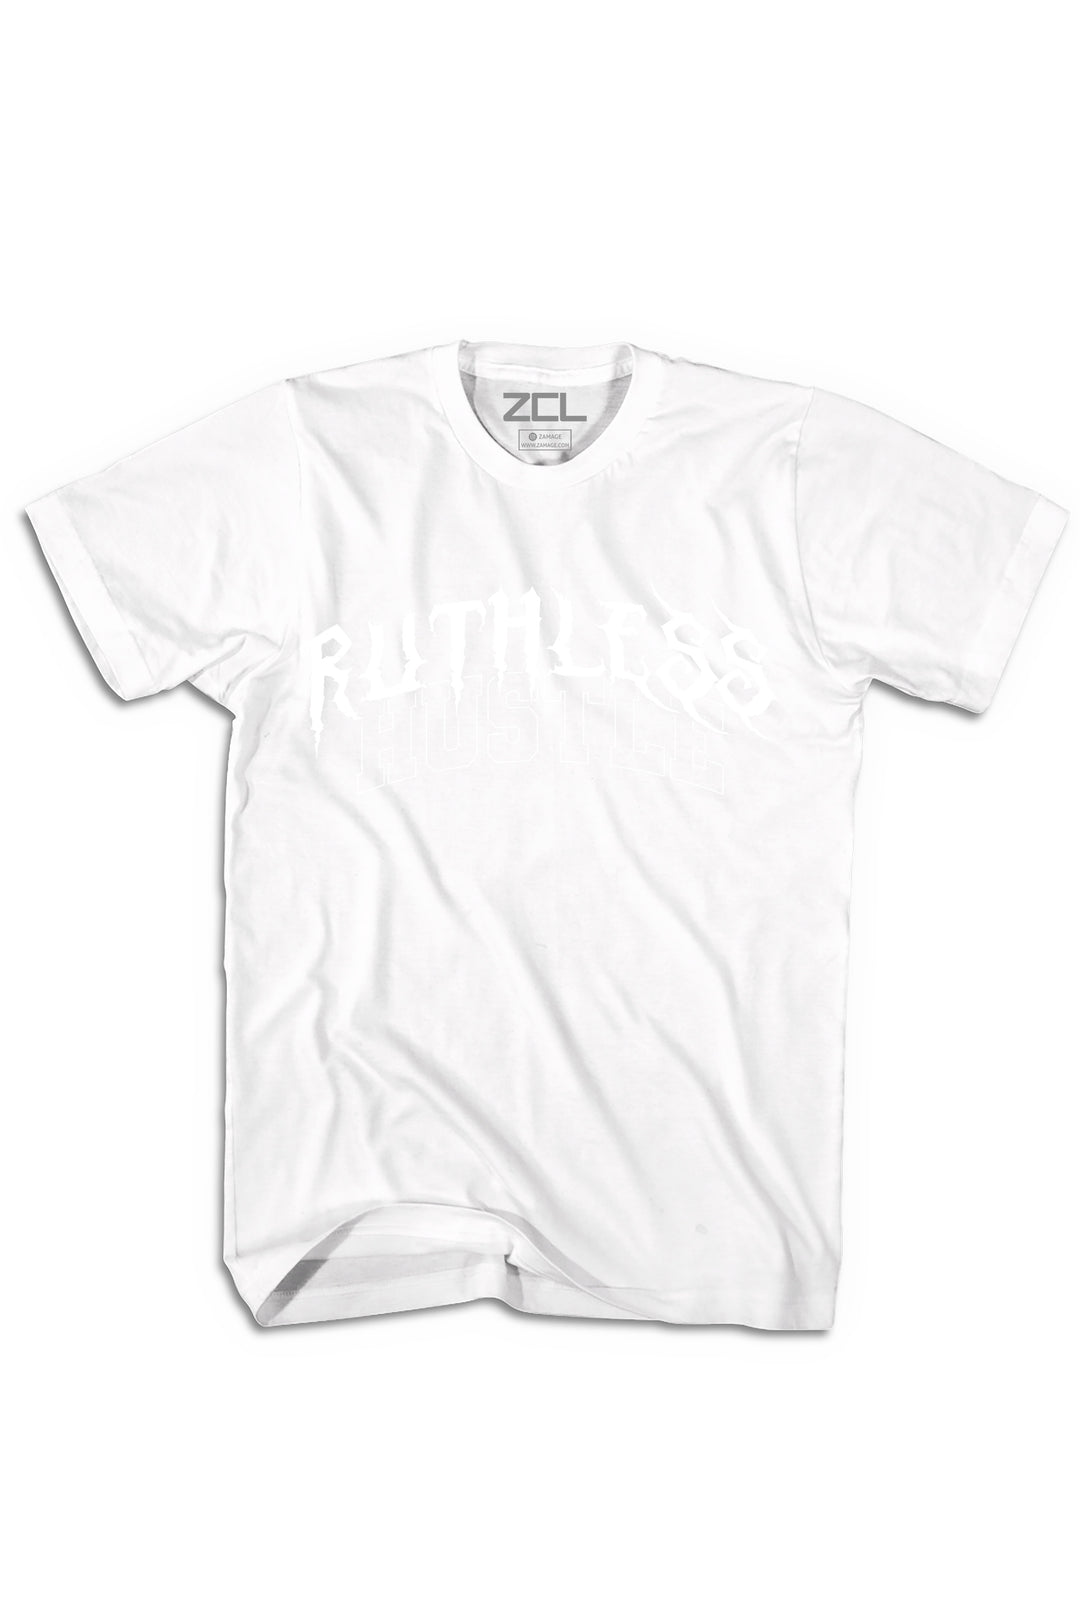 Premium Blank T-Shirt White LG / White